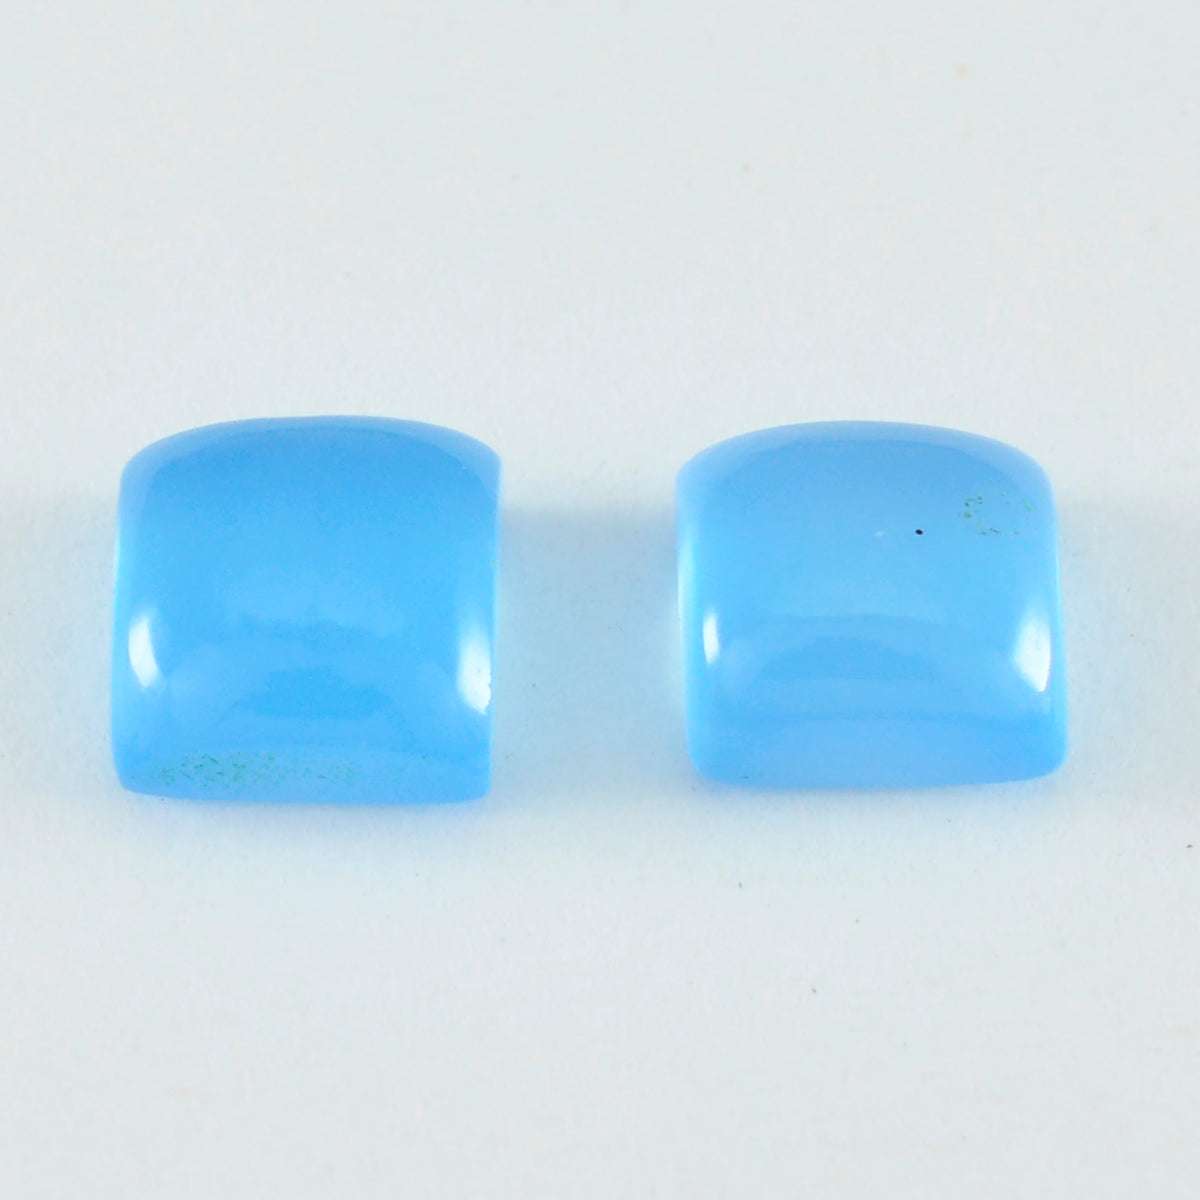 Riyogems 1 Stück blauer Chalcedon-Cabochon, 10 x 10 mm, quadratische Form, schöner, hochwertiger, loser Edelstein